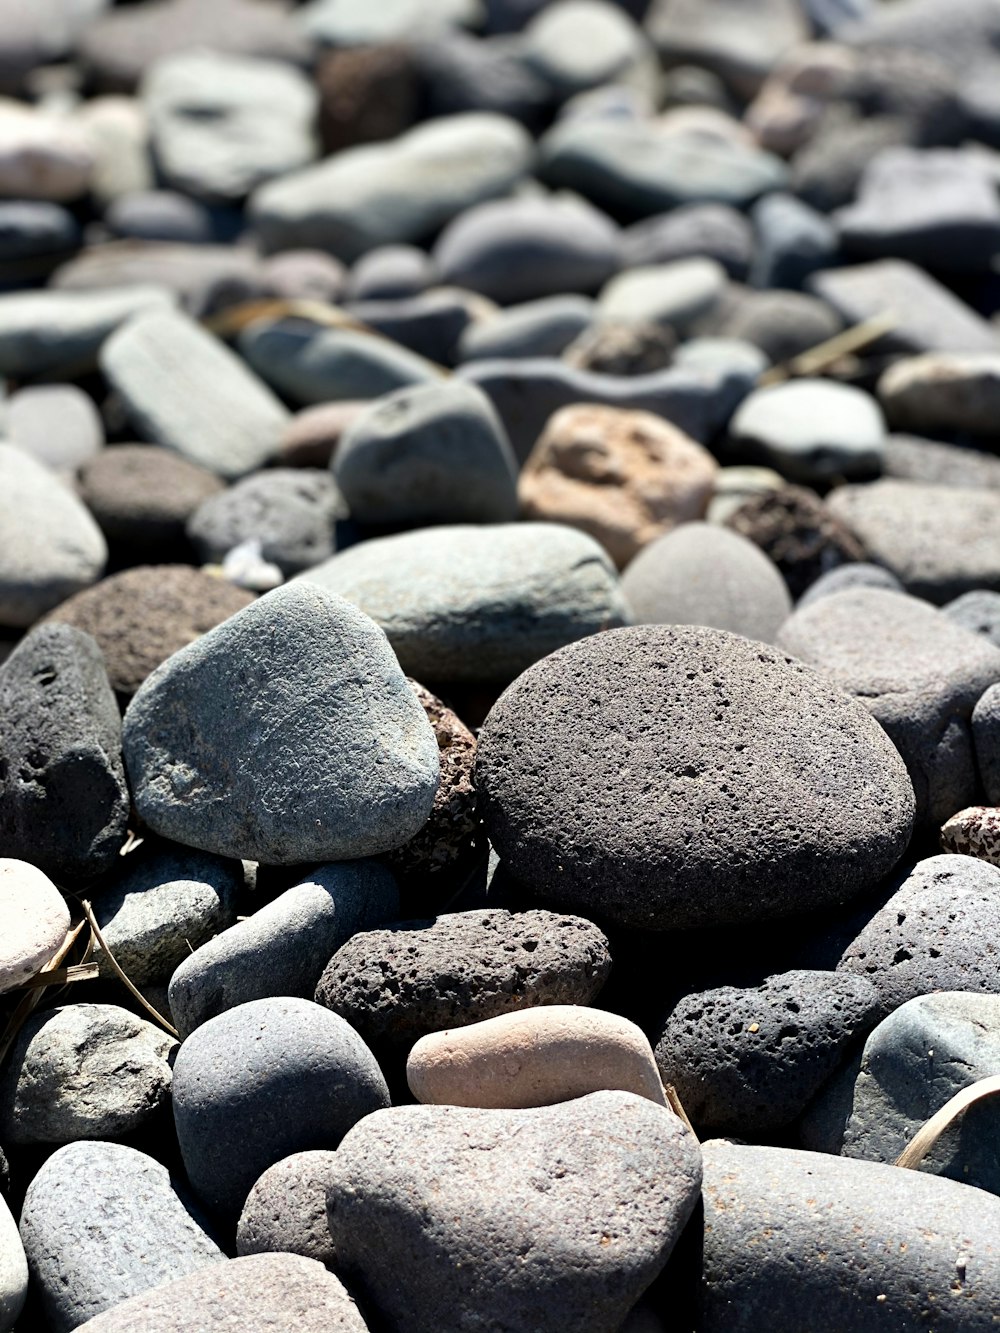 pedras cinzentas e pretas em pedras cinzentas e brancas